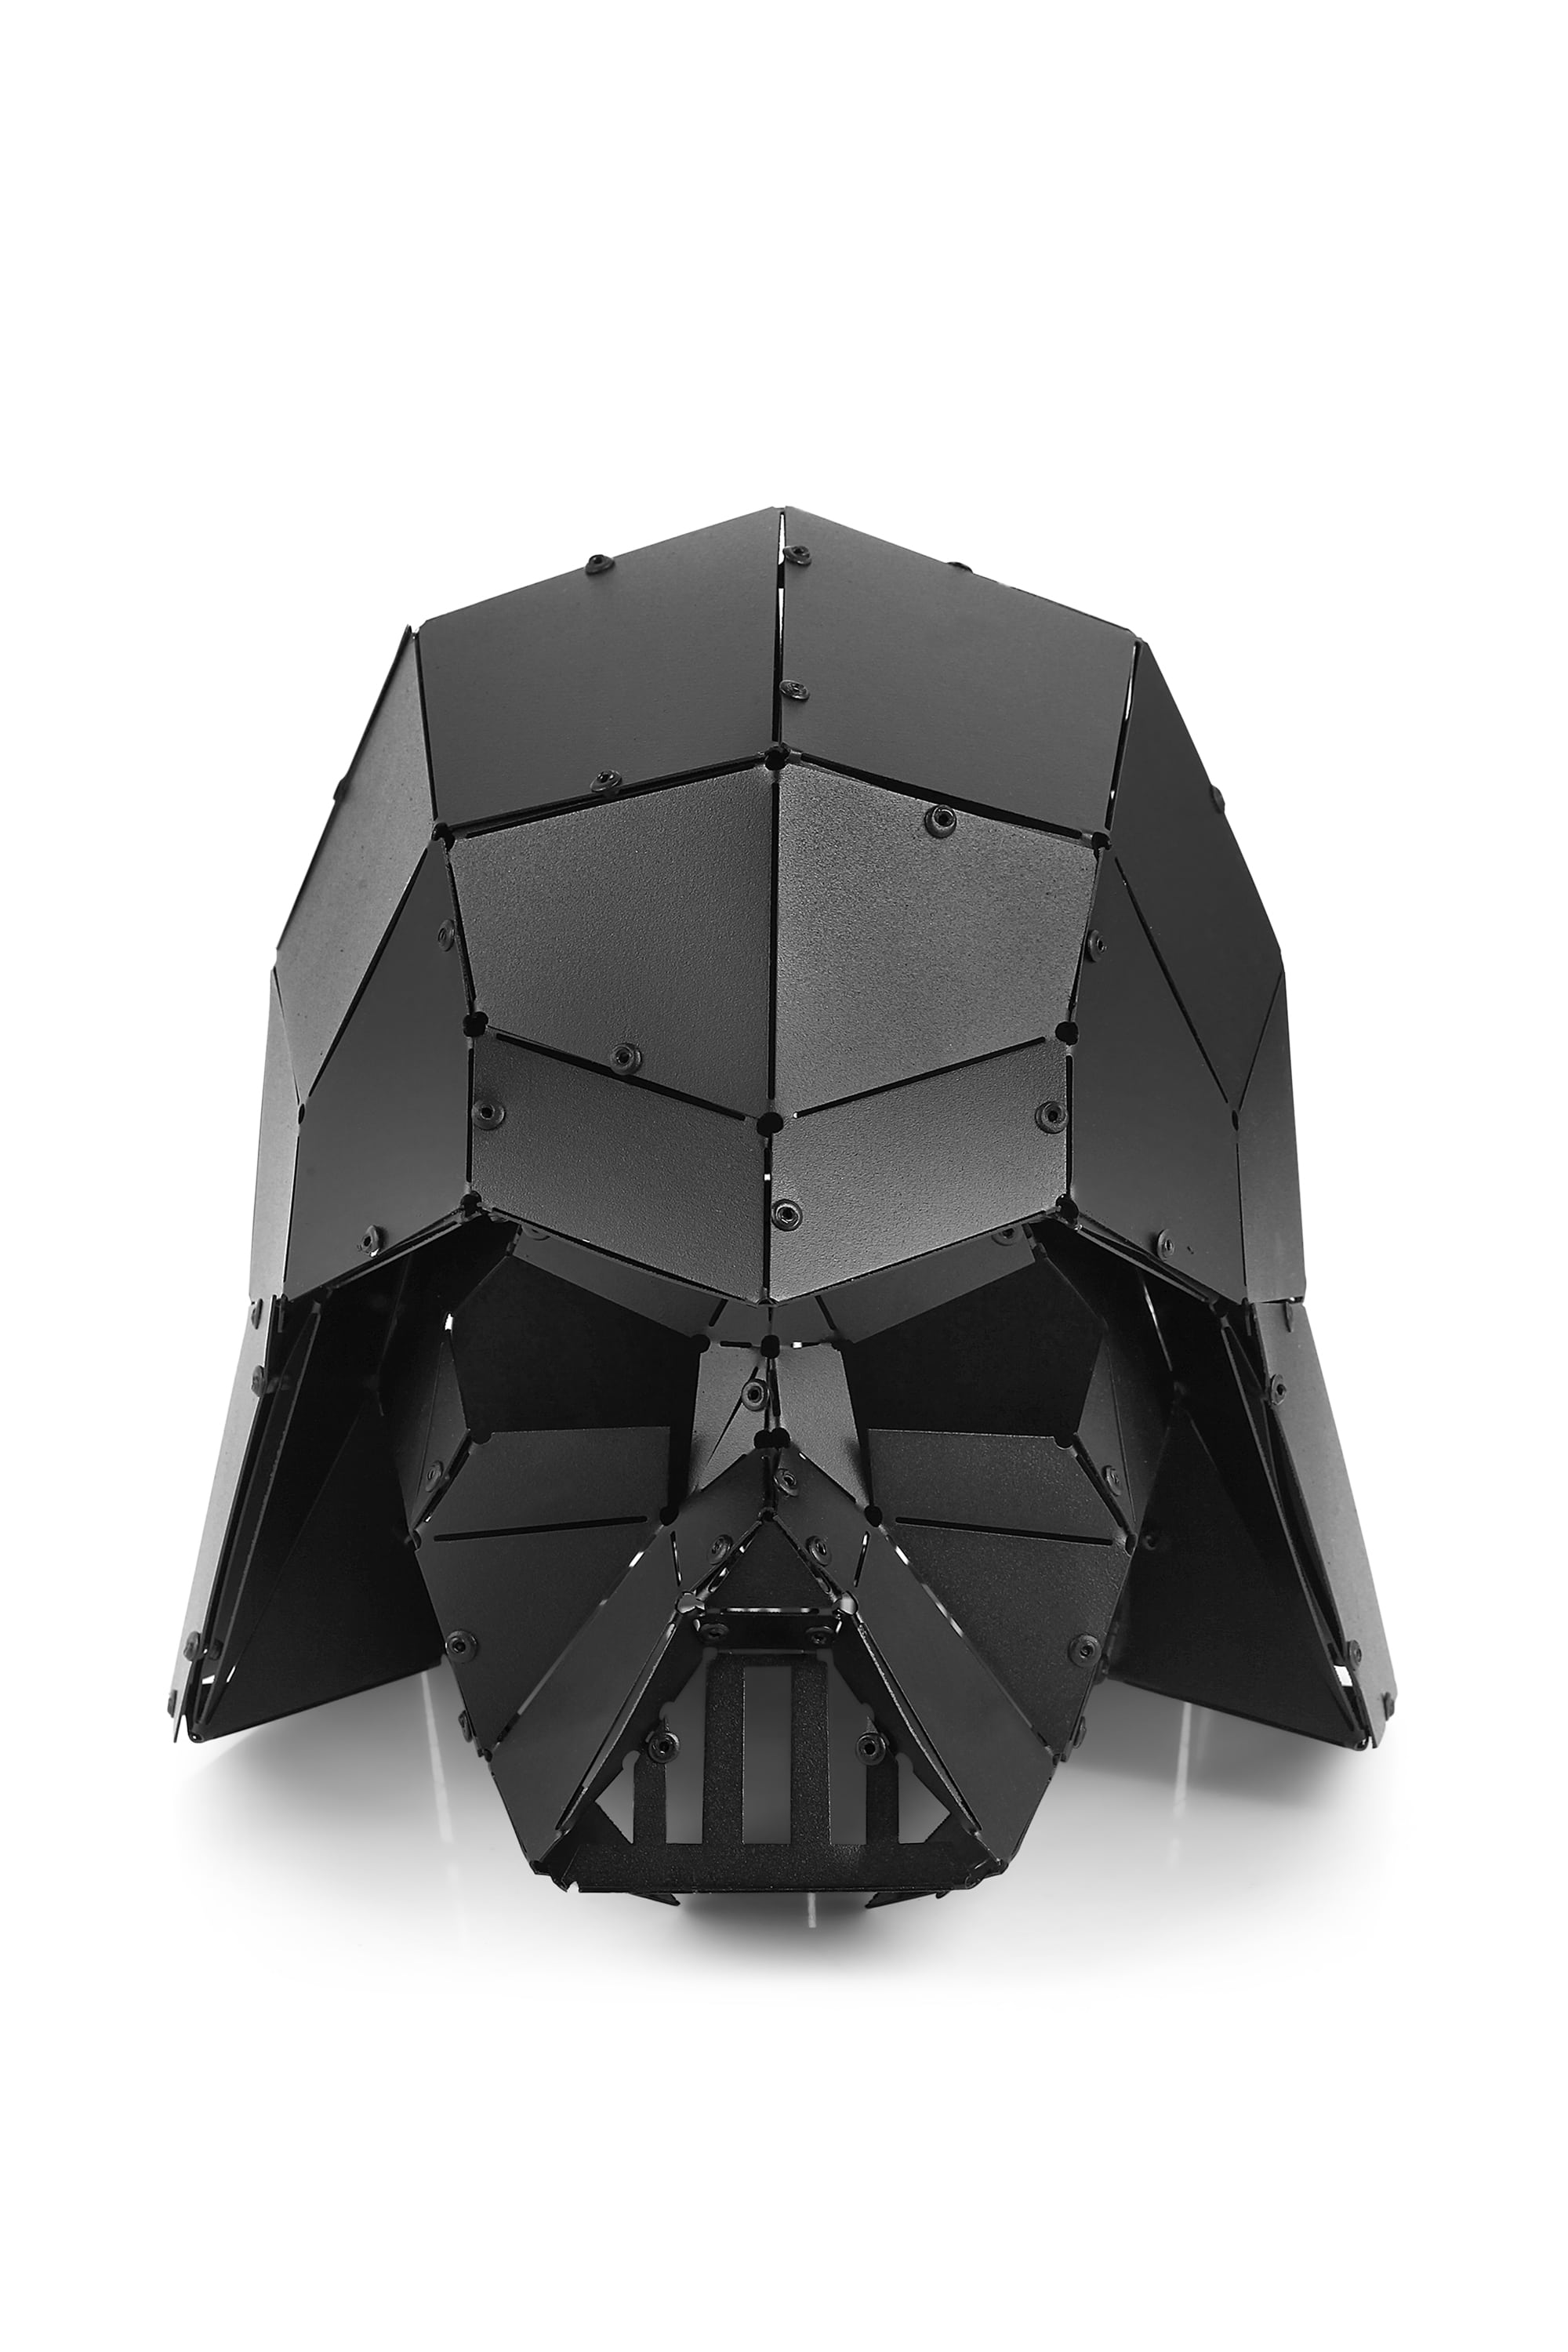 3D Metal Decor – Darth Vader Handmade